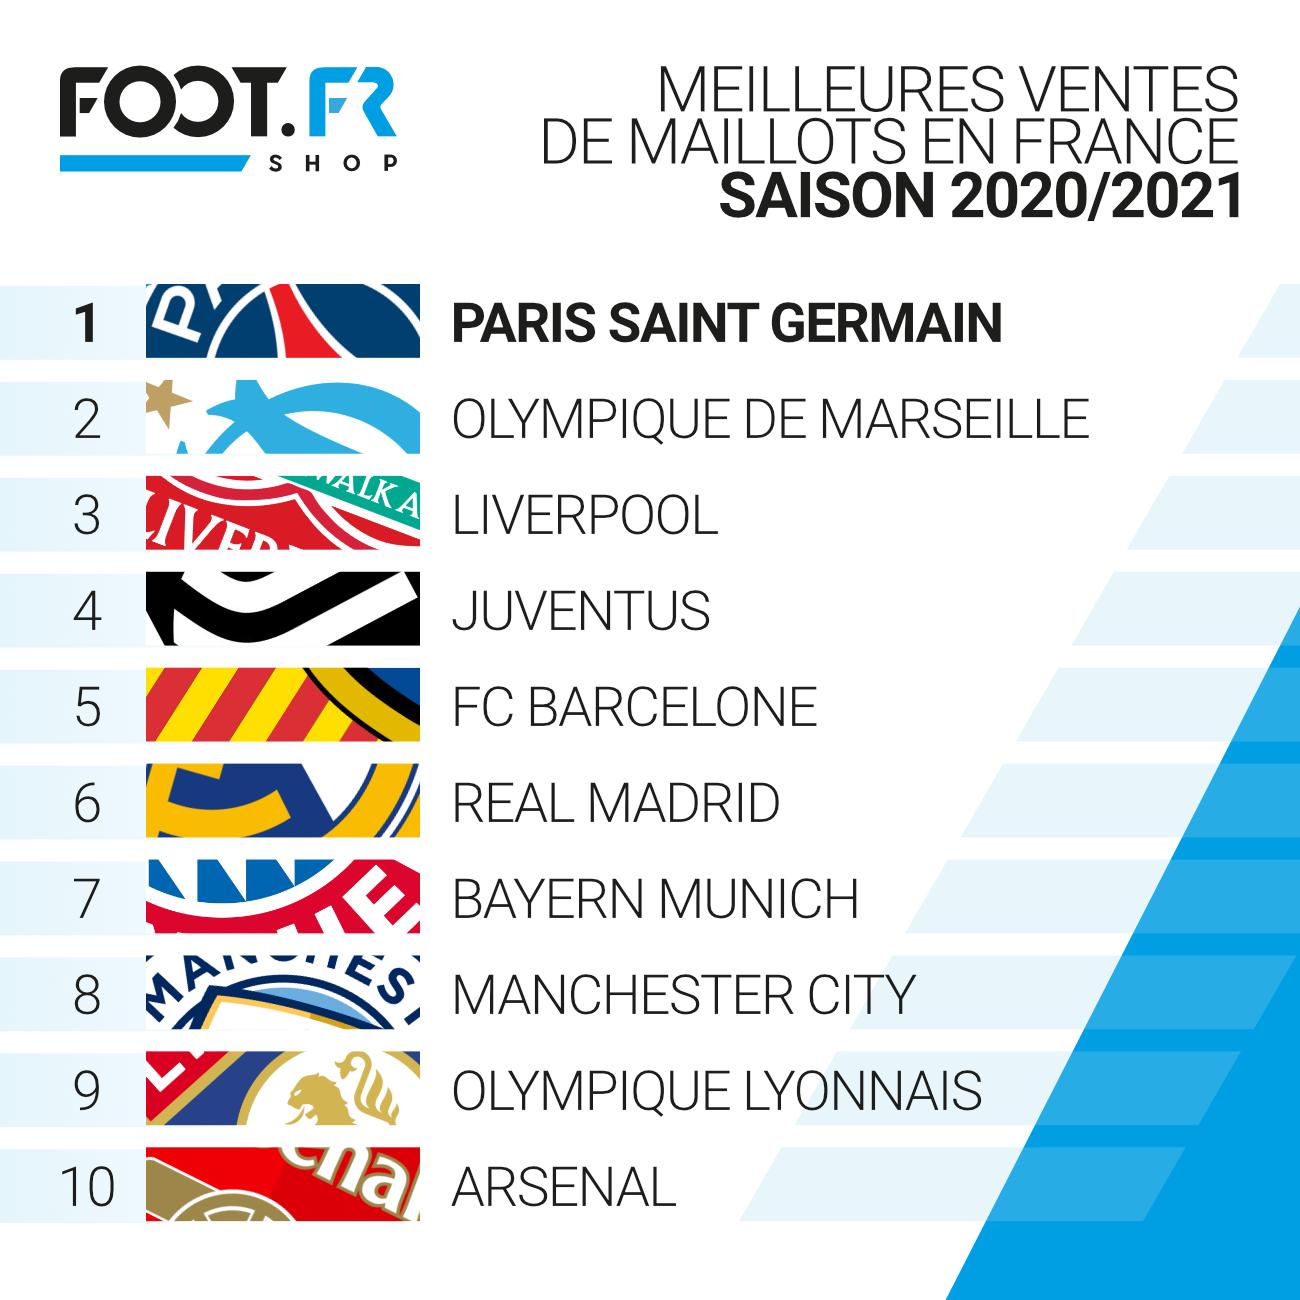 Top maillots 2020 Foot.fr